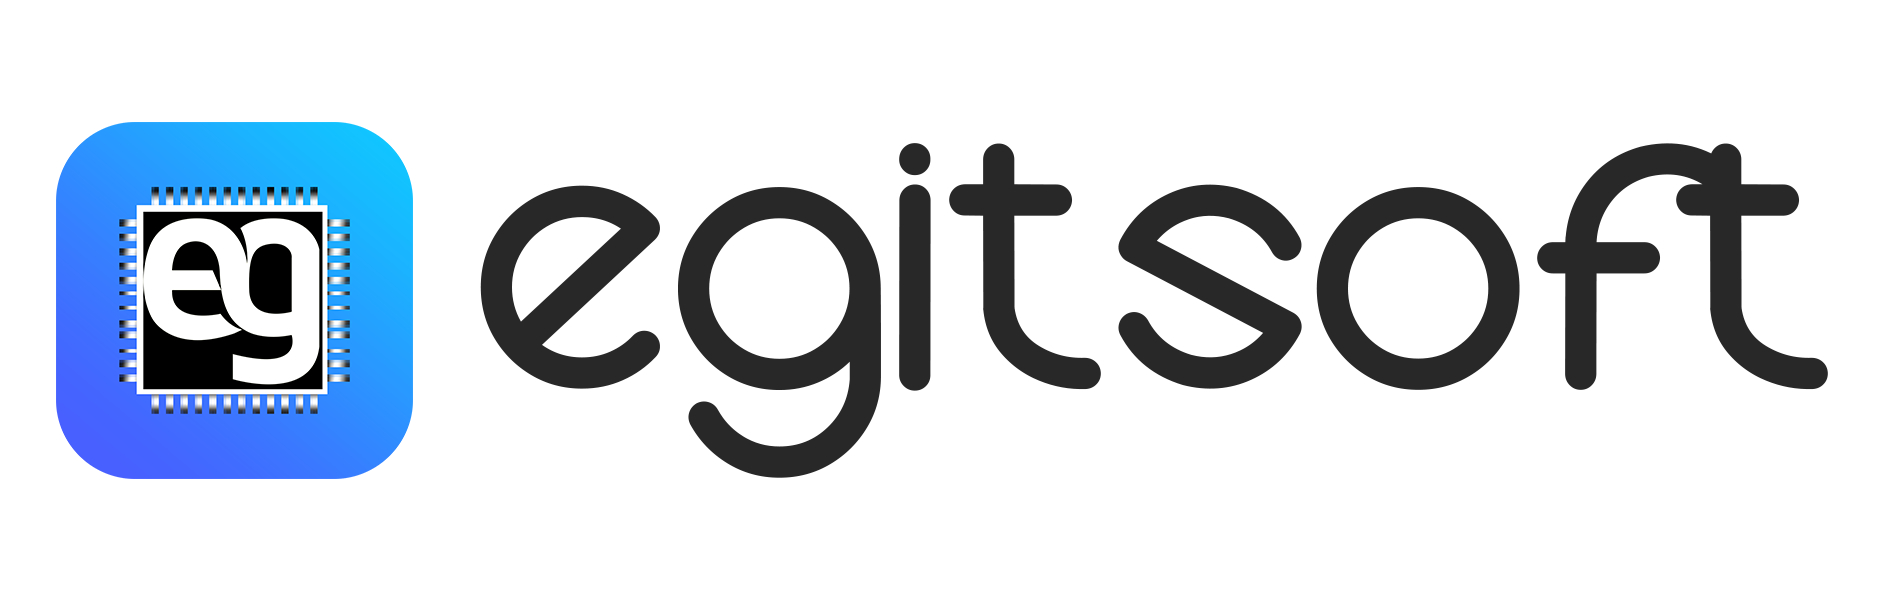 Egitsoft logo.png